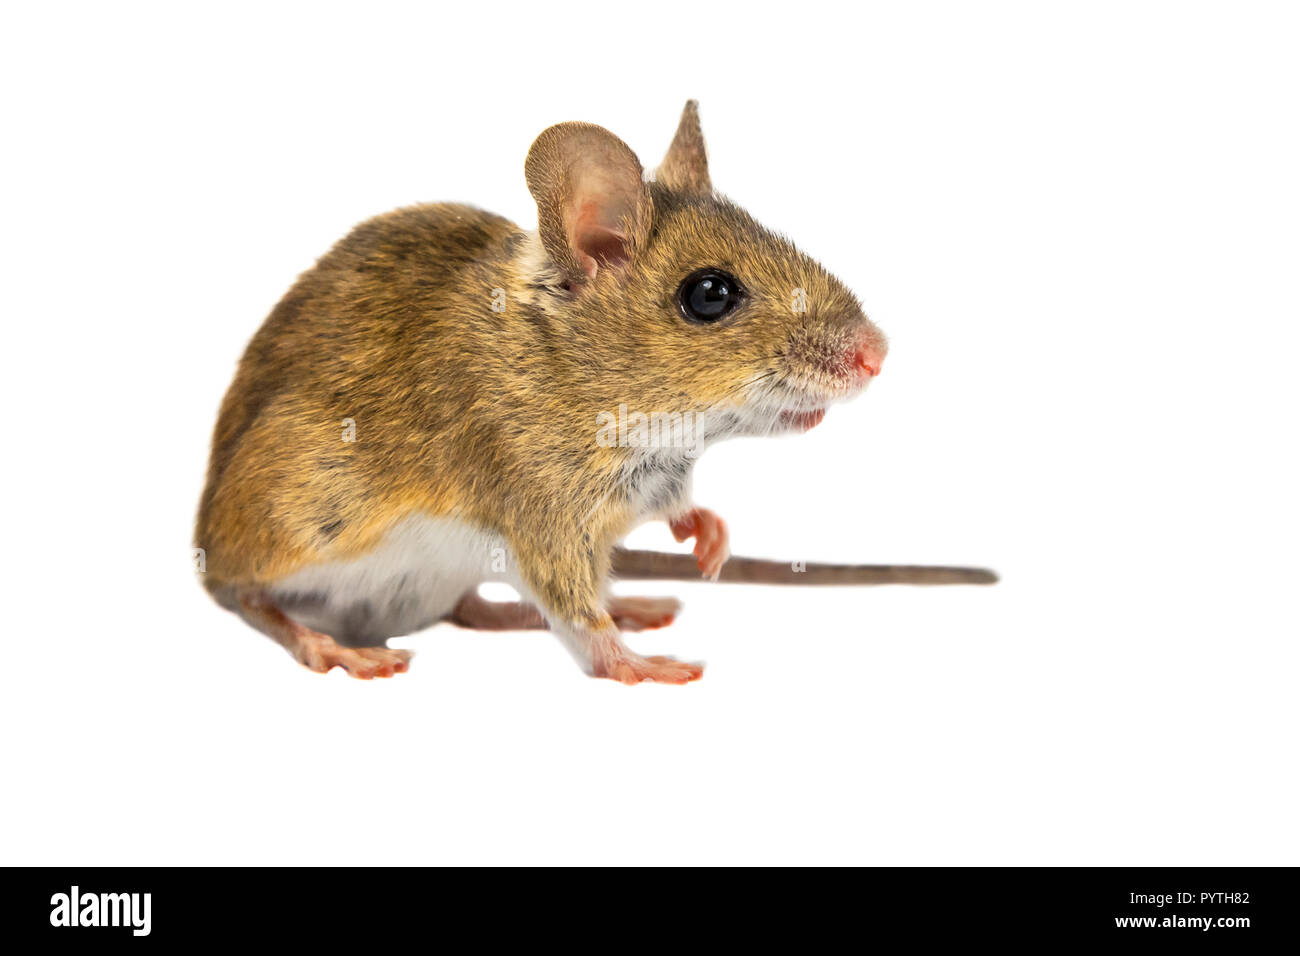 Surpris de la souris en bois (Apodemus sylvaticus) avec mignon yeux marron à la curieuse dans l'appareil photo sur fond blanc Banque D'Images